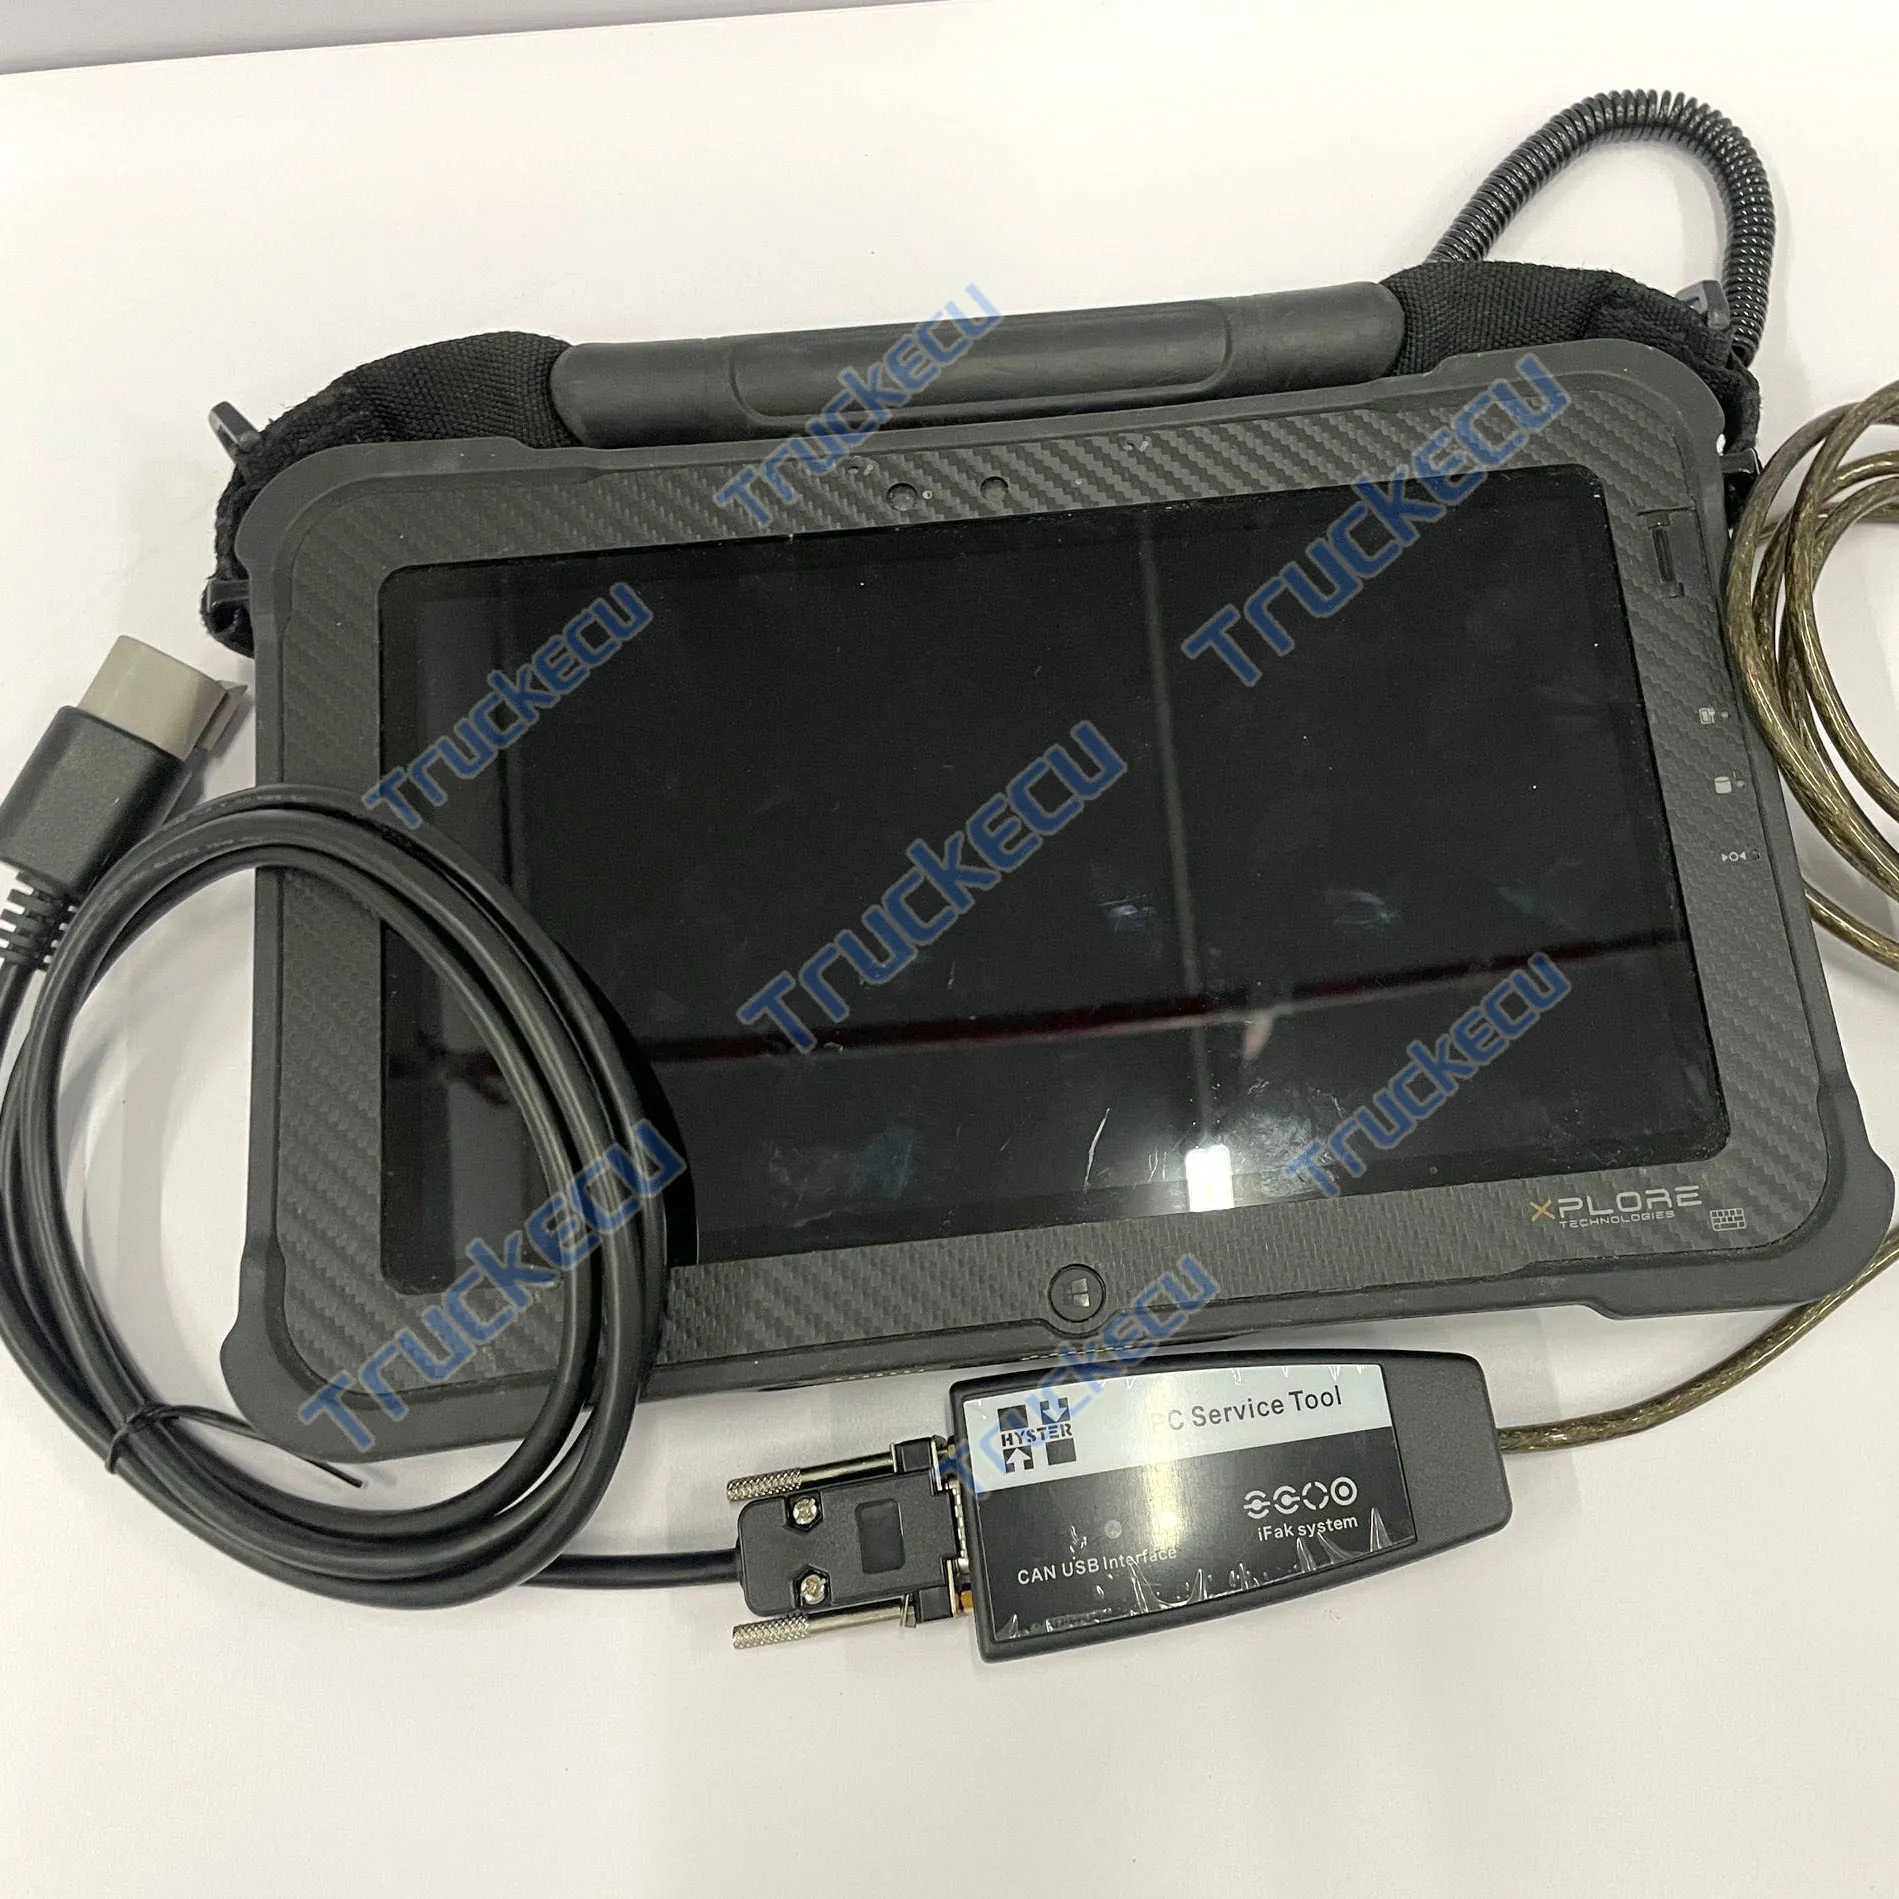 Xplore Tablet + Caminhão Empilhadeira Auto Diagnóstico Kit para Yale Hyster Ferramenta de Serviço PC Ifak CAN Interface USB Hyster Yale